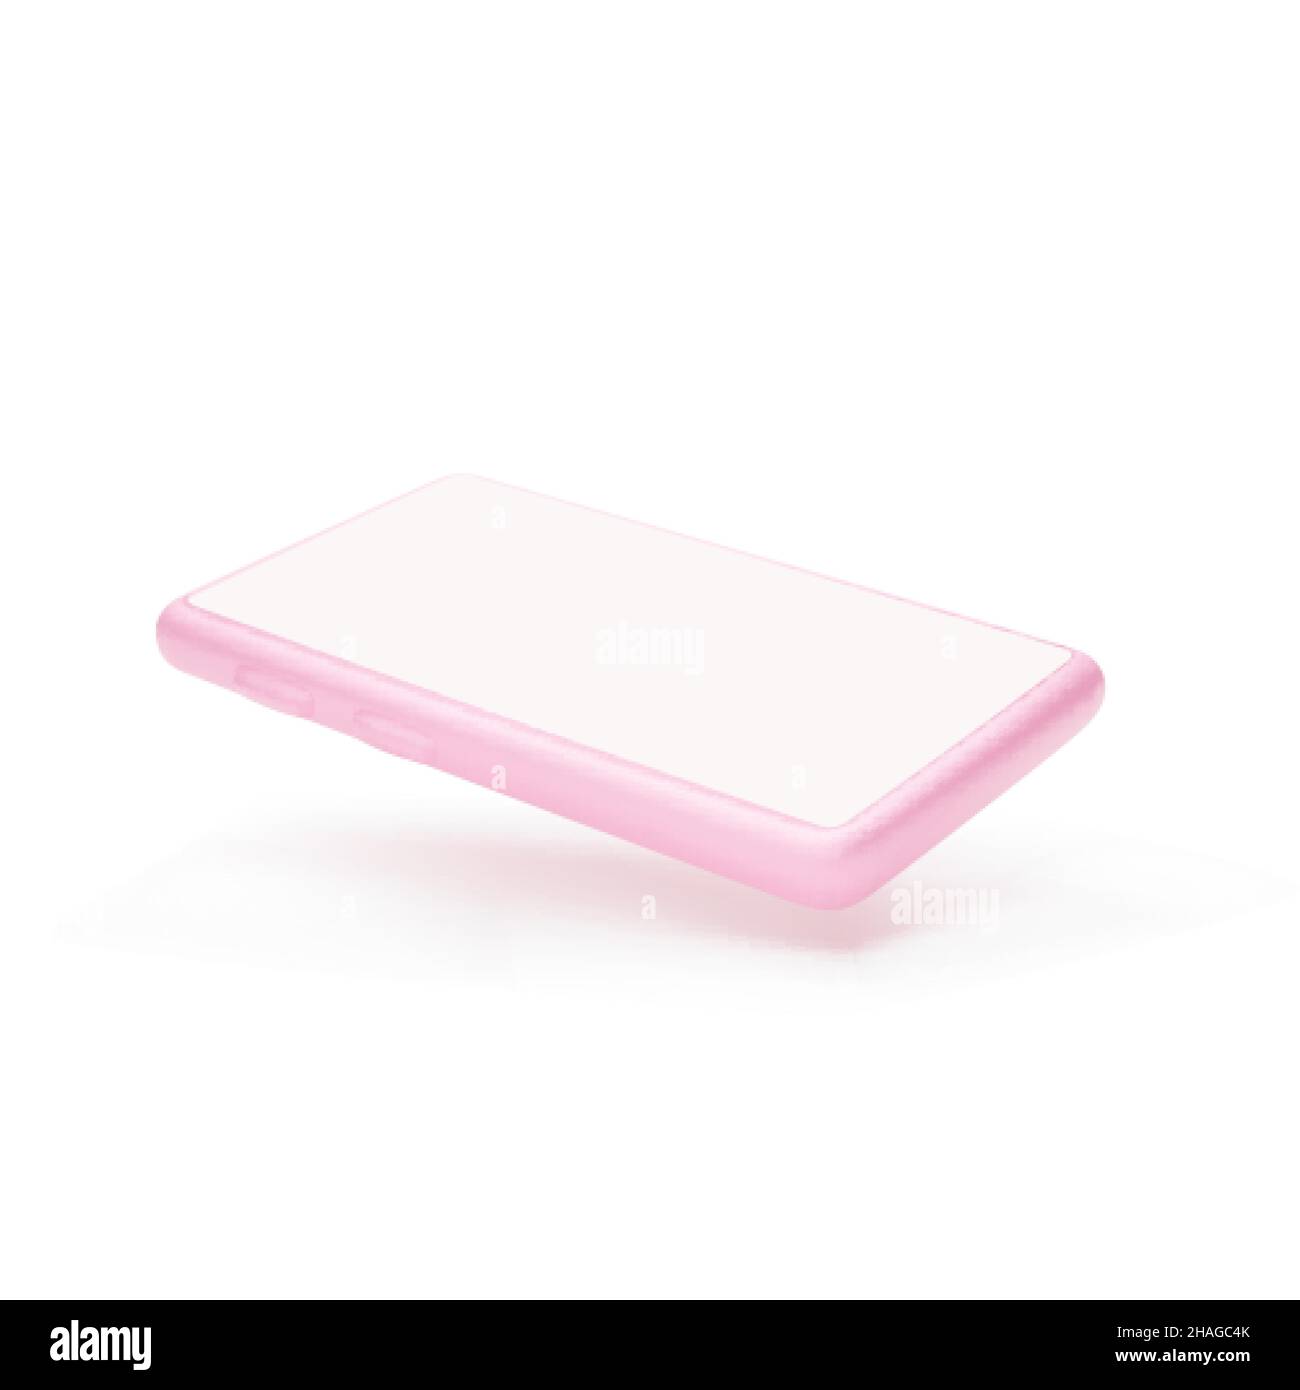 Maquette de téléphone mobile.3d téléphone couleur rose.Smartphone avec écran vide isolé sur fond blanc.Illustration vectorielle Illustration de Vecteur